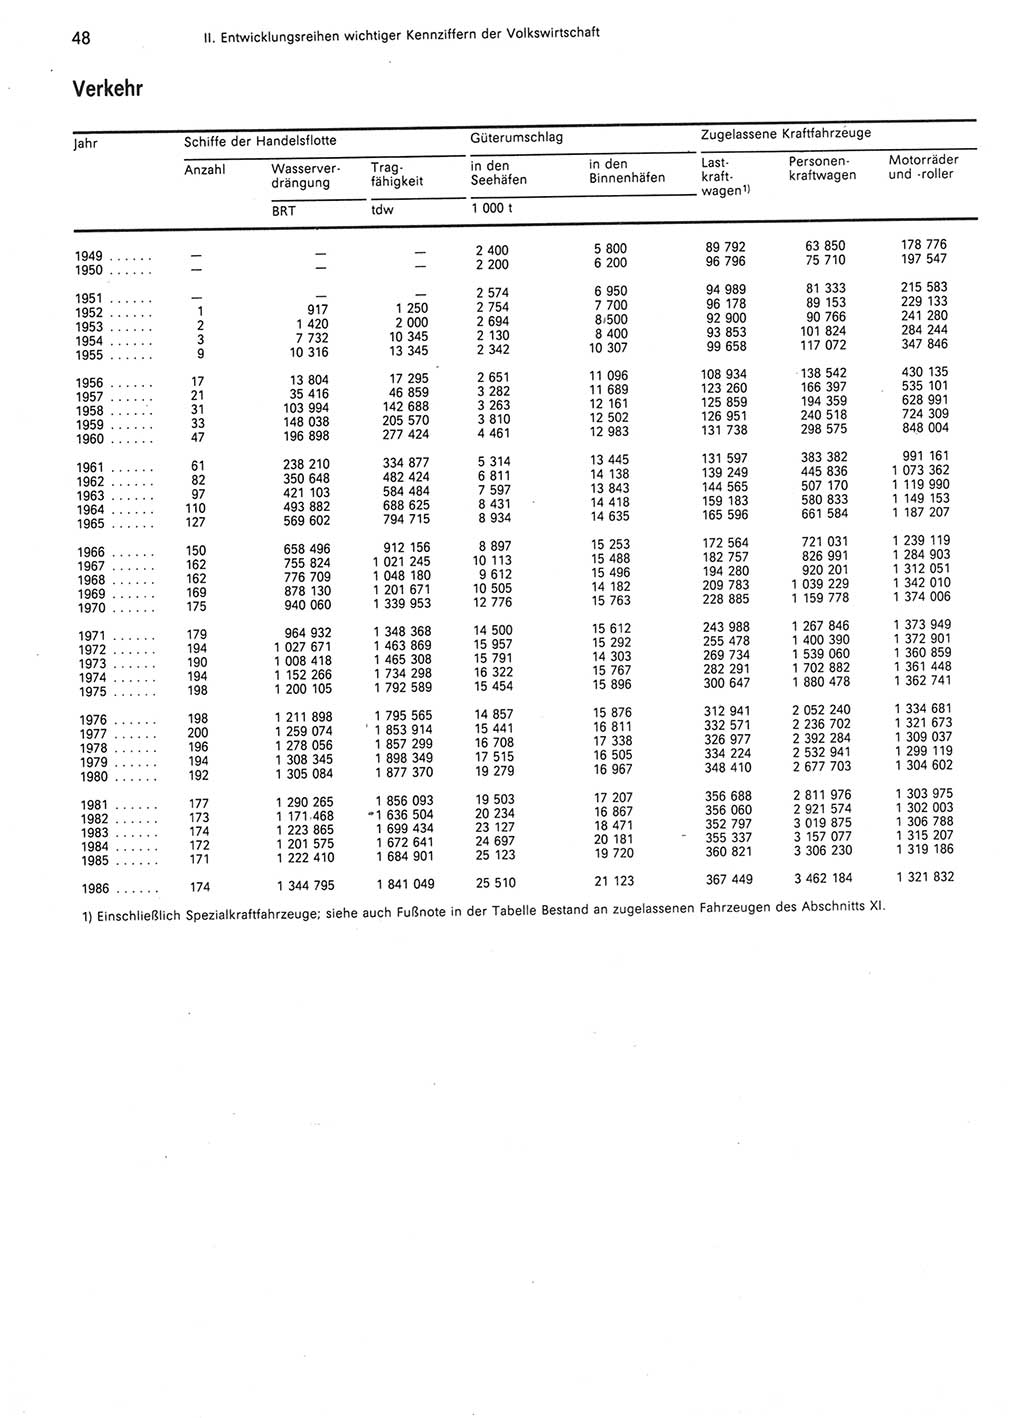 Statistisches Jahrbuch der Deutschen Demokratischen Republik (DDR) 1987, Seite 48 (Stat. Jb. DDR 1987, S. 48)